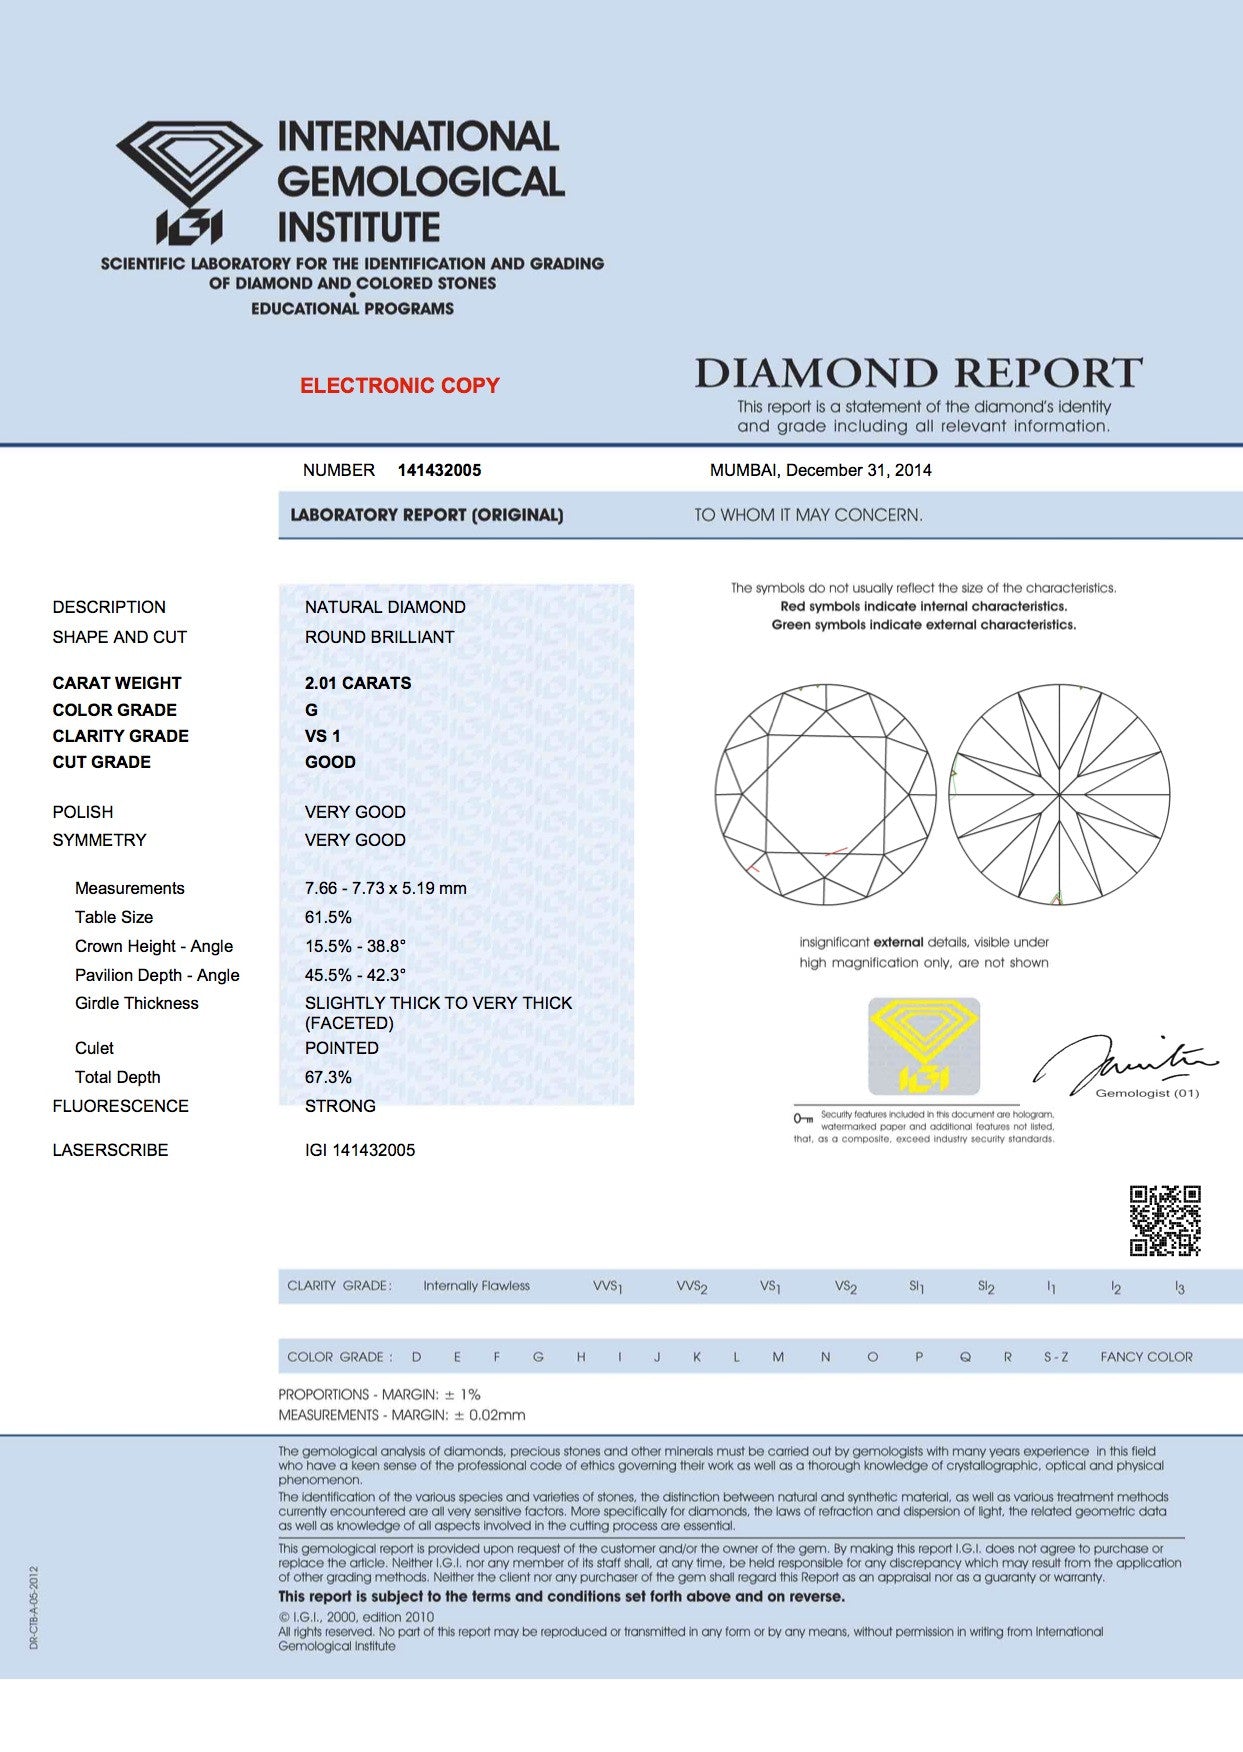 2.01ct G-VS1 Loose  Round Diamond JEWELFORME BLUE 900,000 GIA IGI certified Diamonds